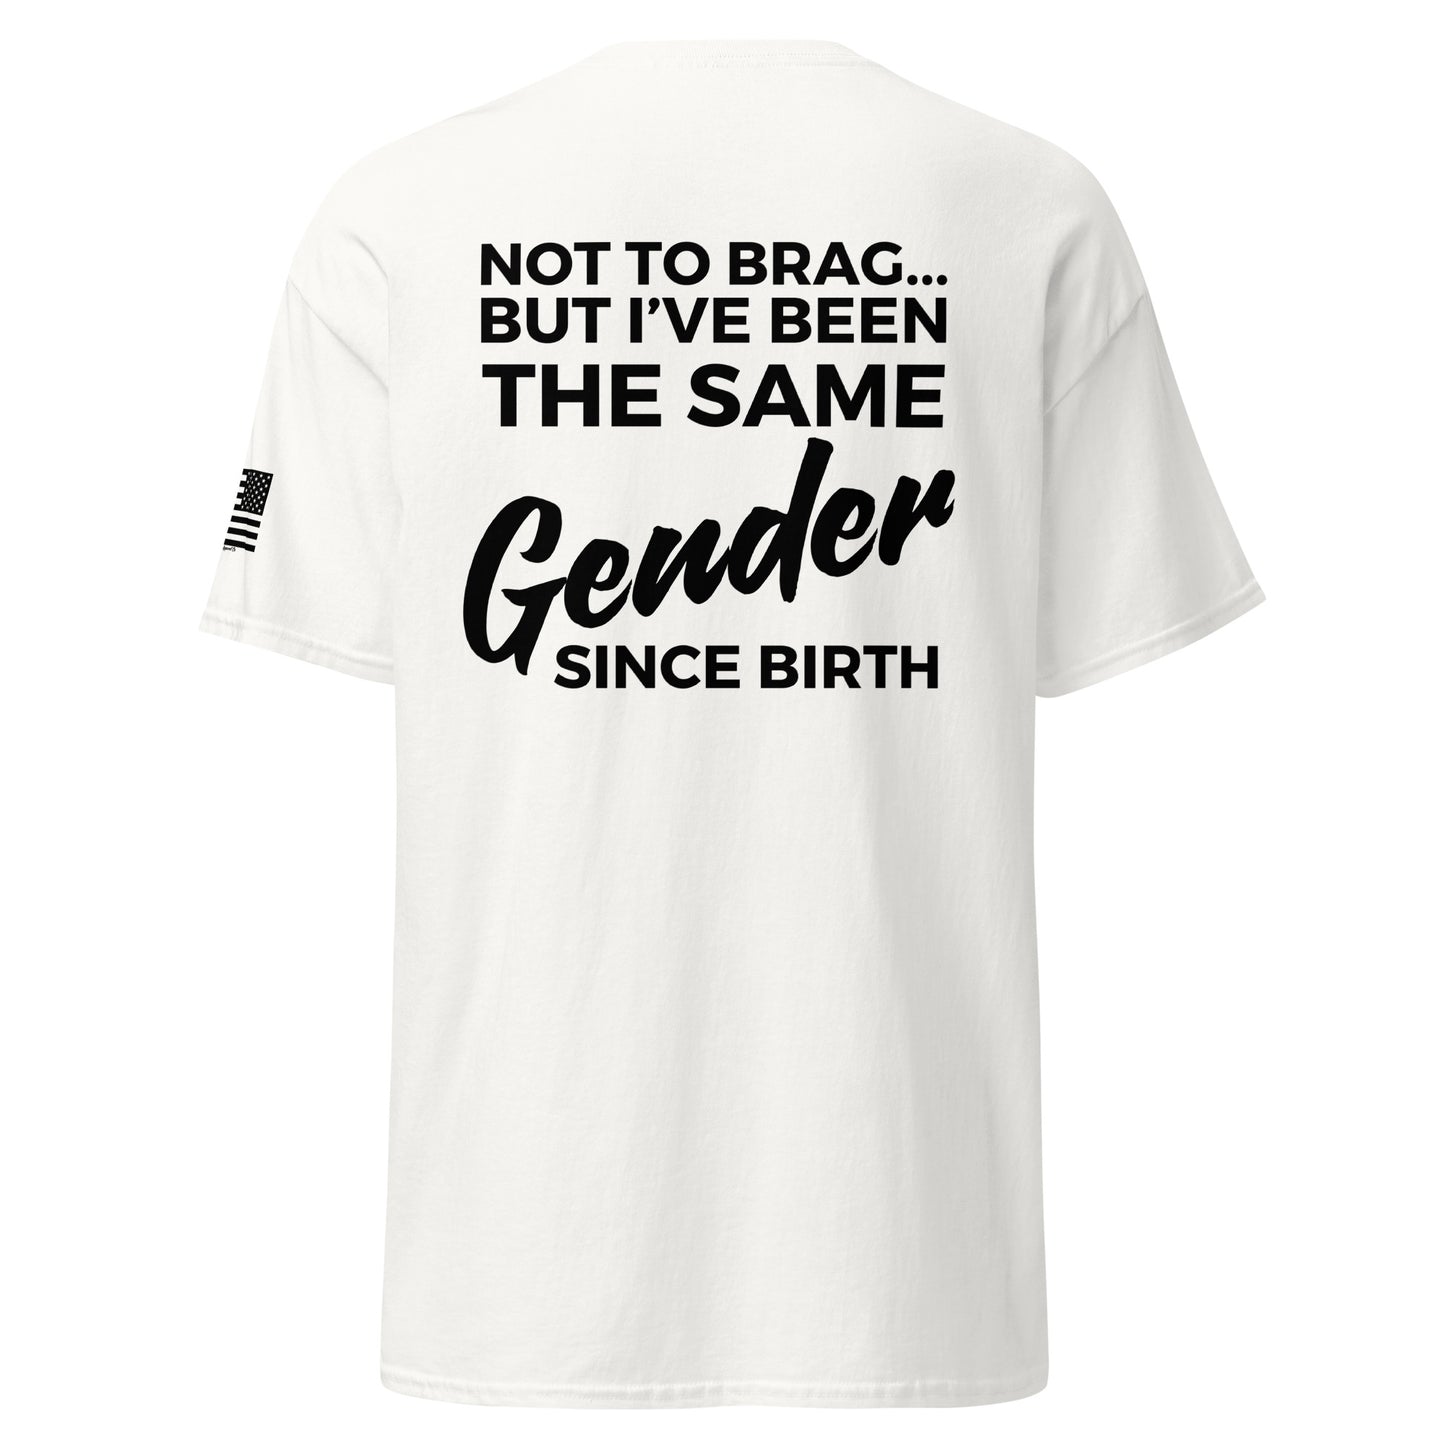 "Same Gender Since Birth" T-Shirt